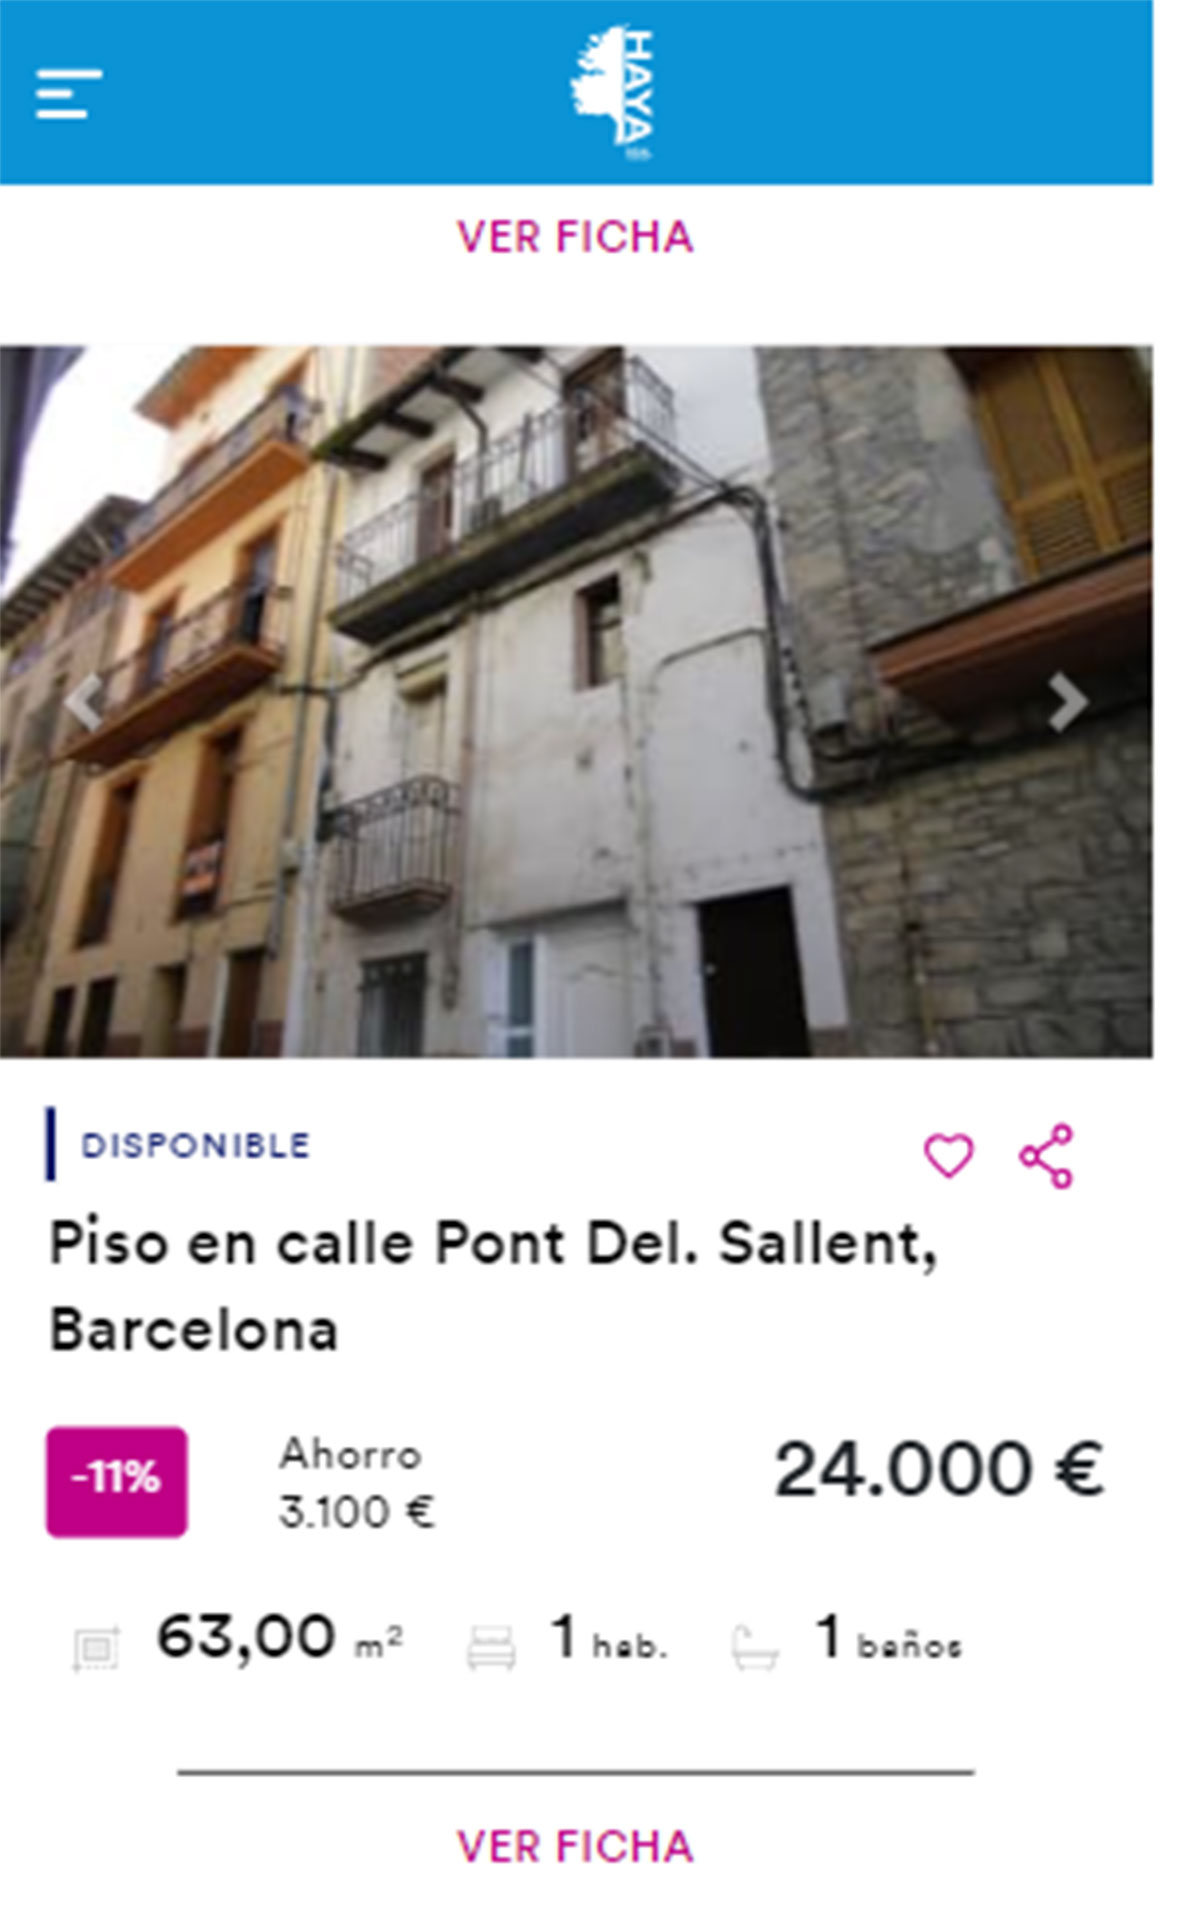 Piso en Barcelona por 24.000 euros